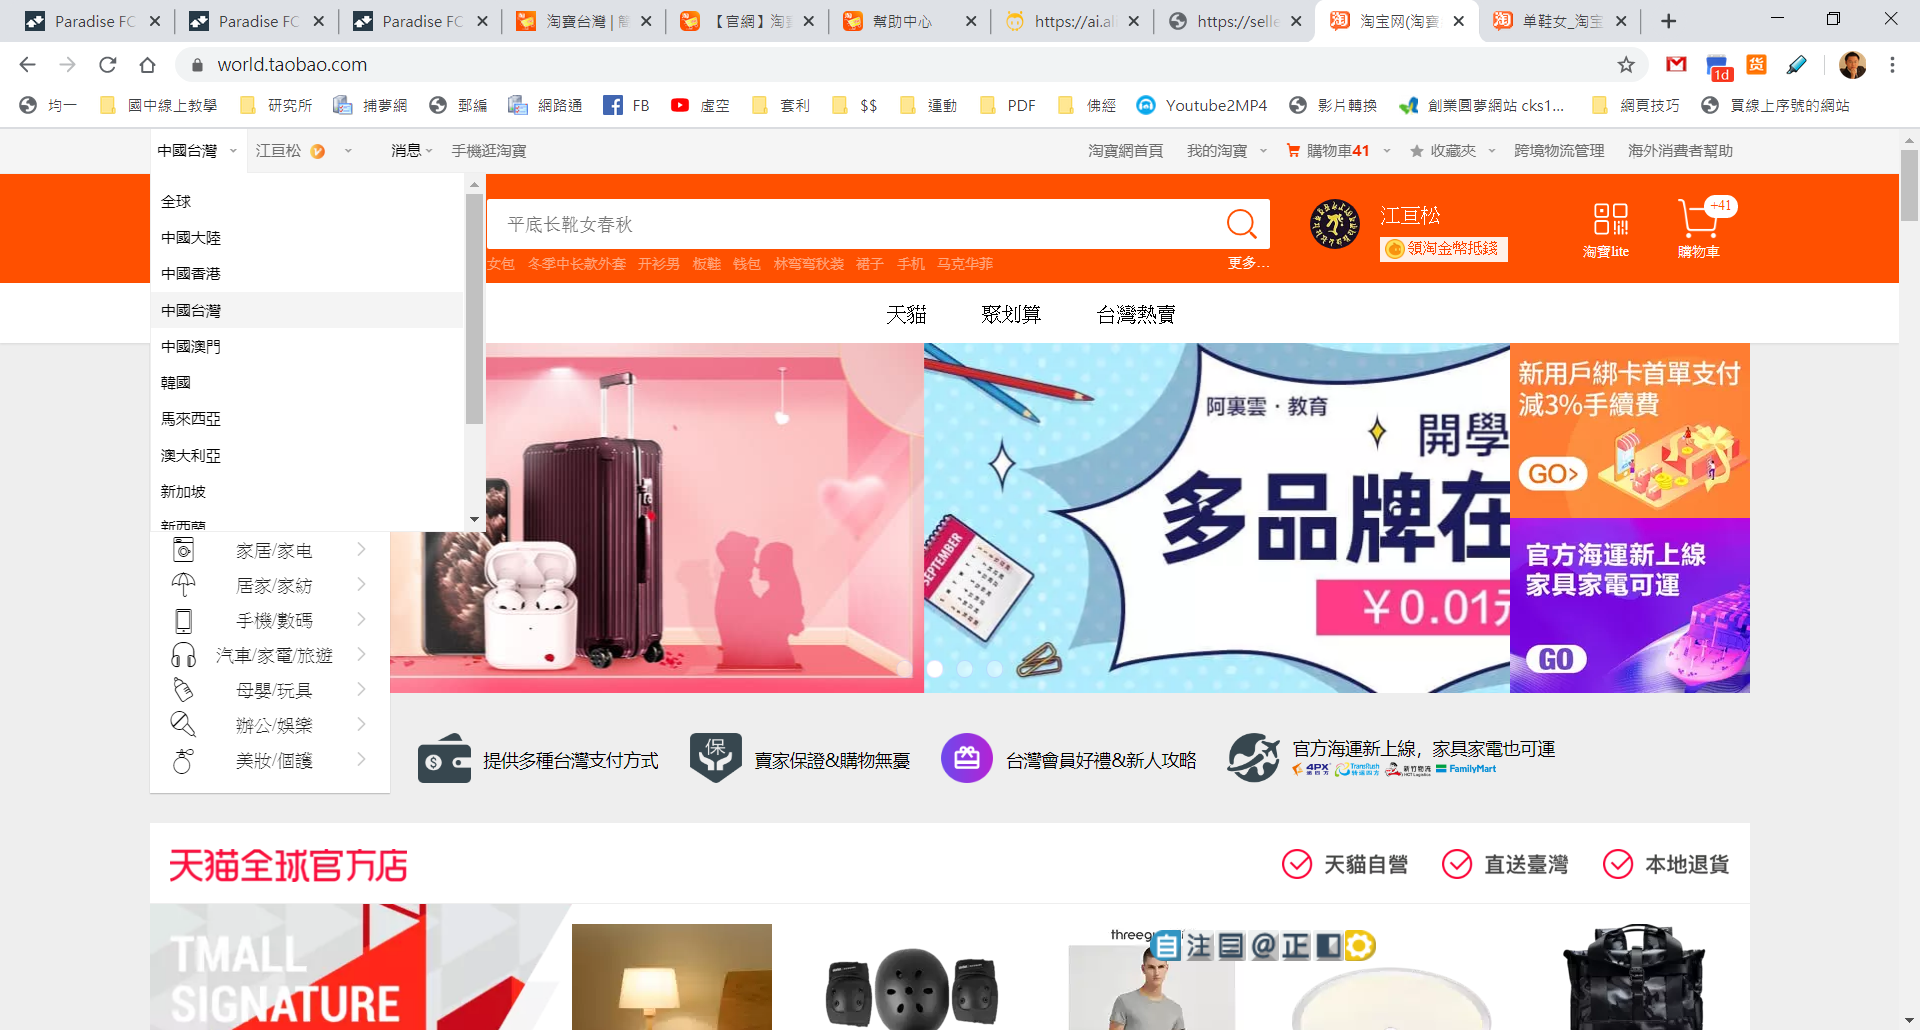 淘寶台灣與淘寶網的中國台灣差異  行銷管理顧問公司 網路通科技